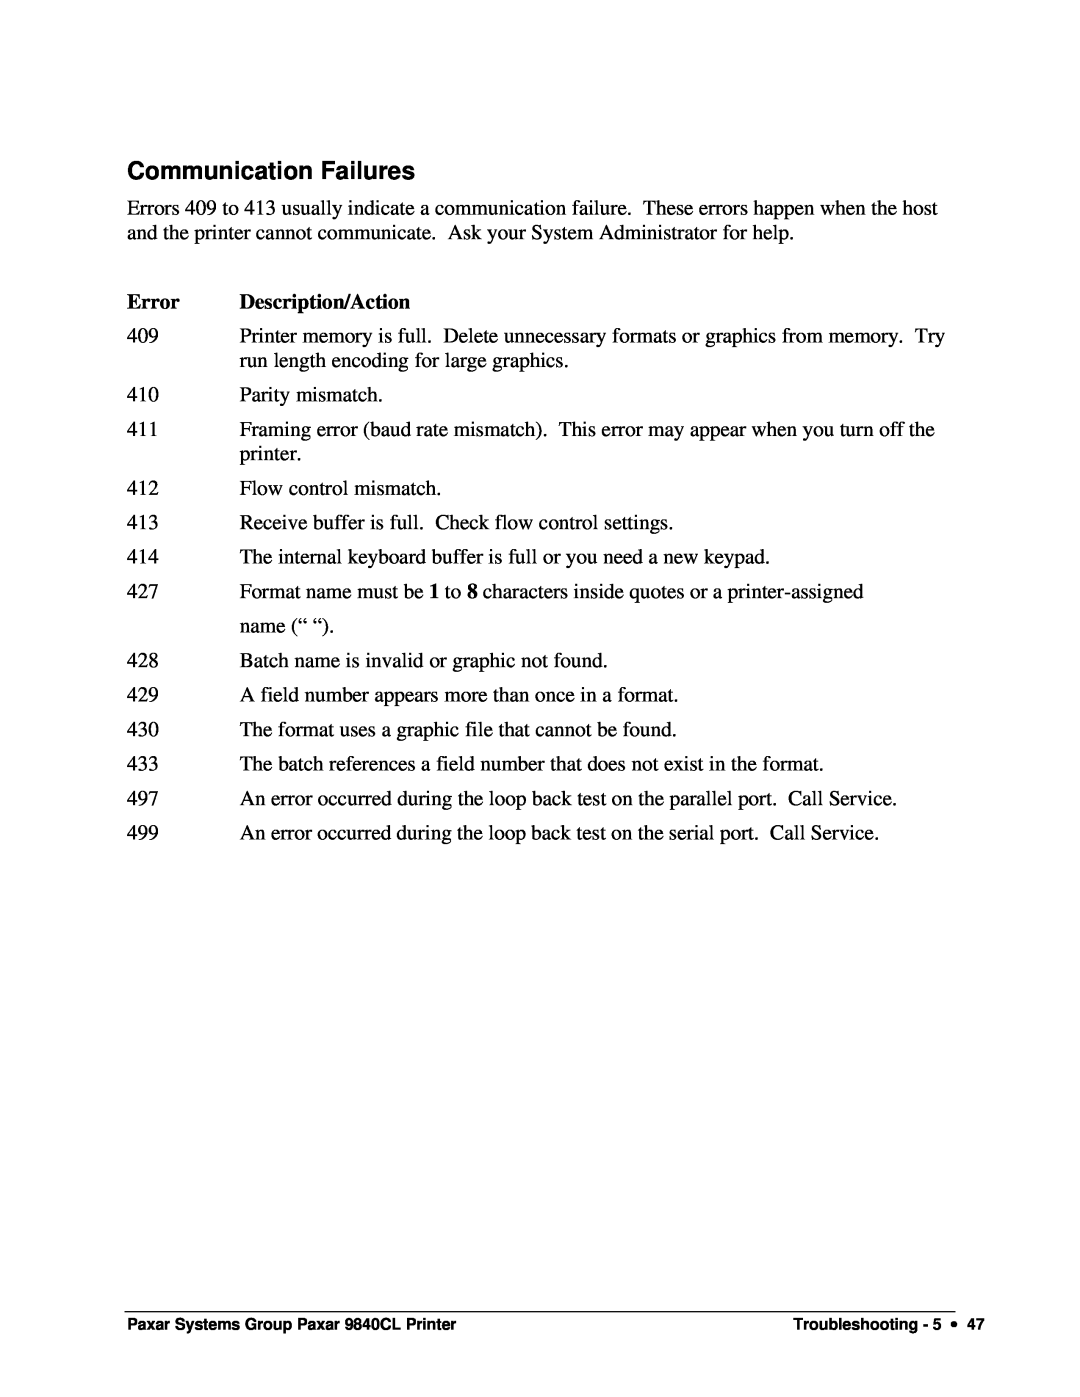 Paxar 9840CL user manual Communication Failures, Error Description/Action 